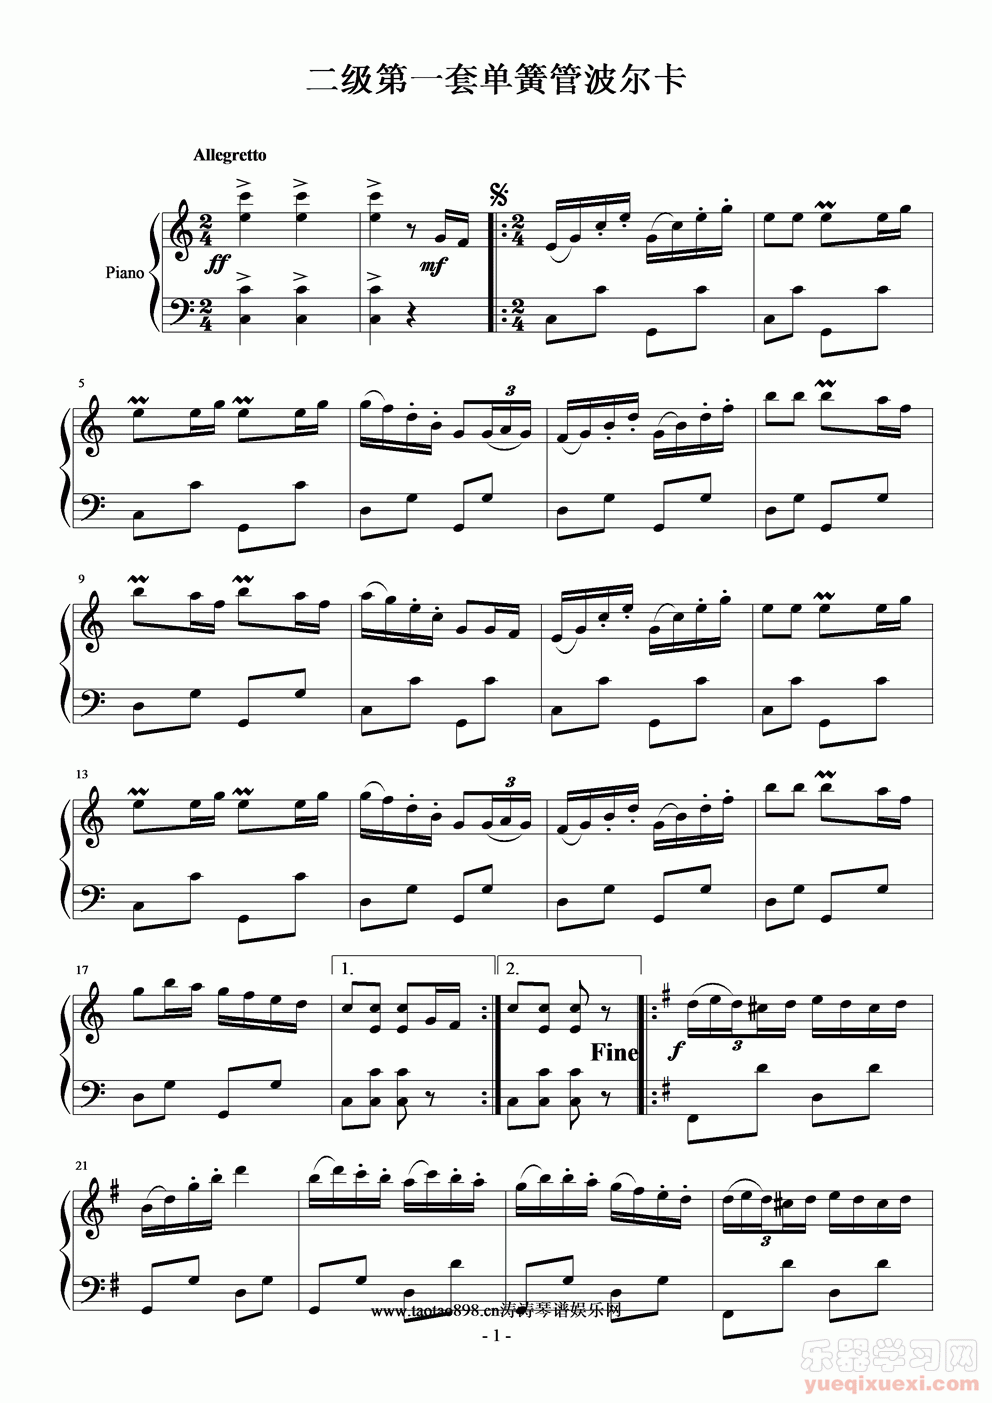 二级第一套单簧管波尔卡